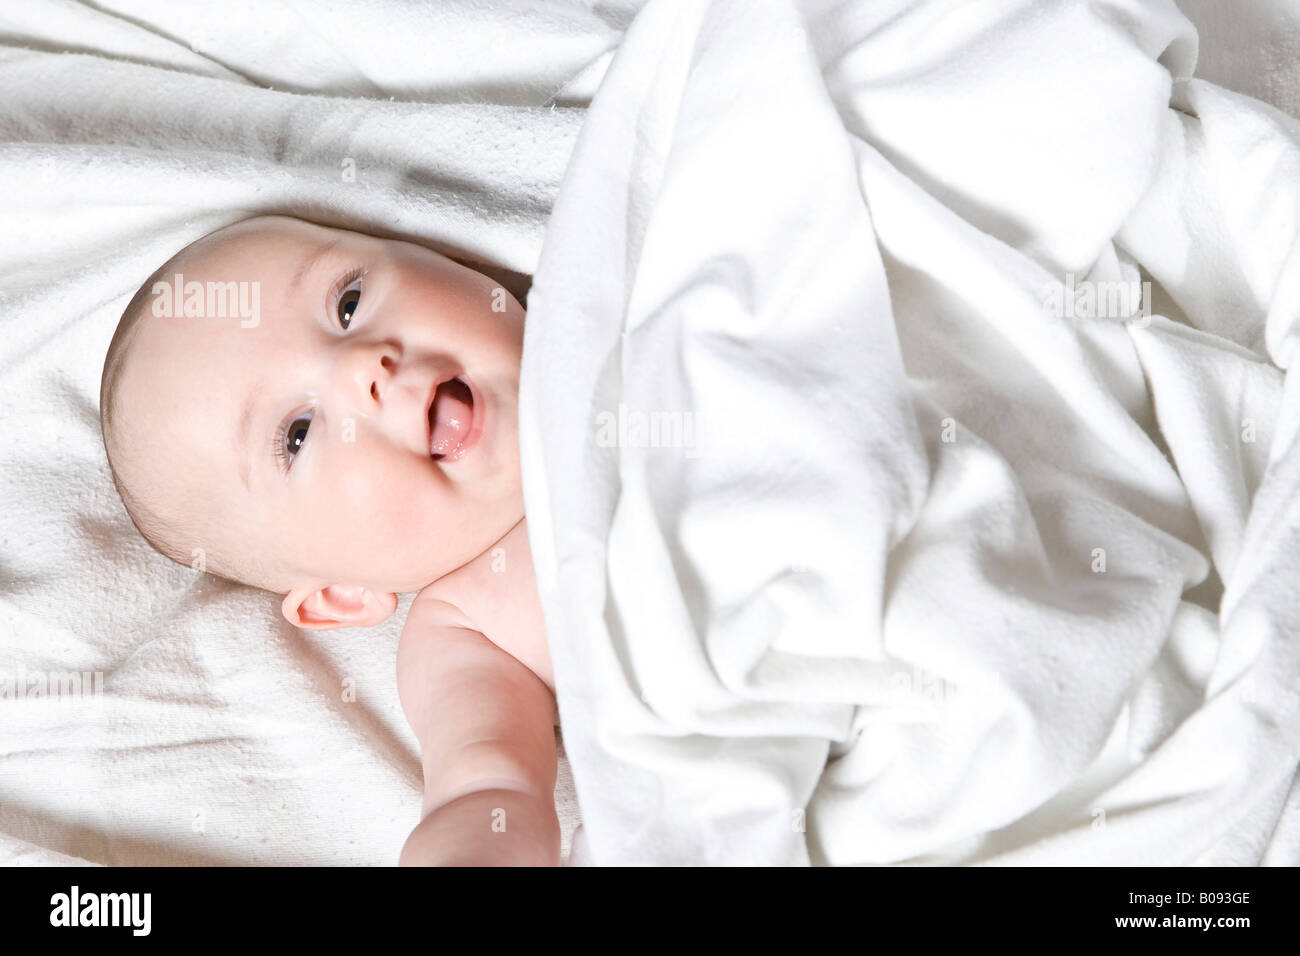 Quattro-mese-vecchio baby sotto una coperta Foto Stock